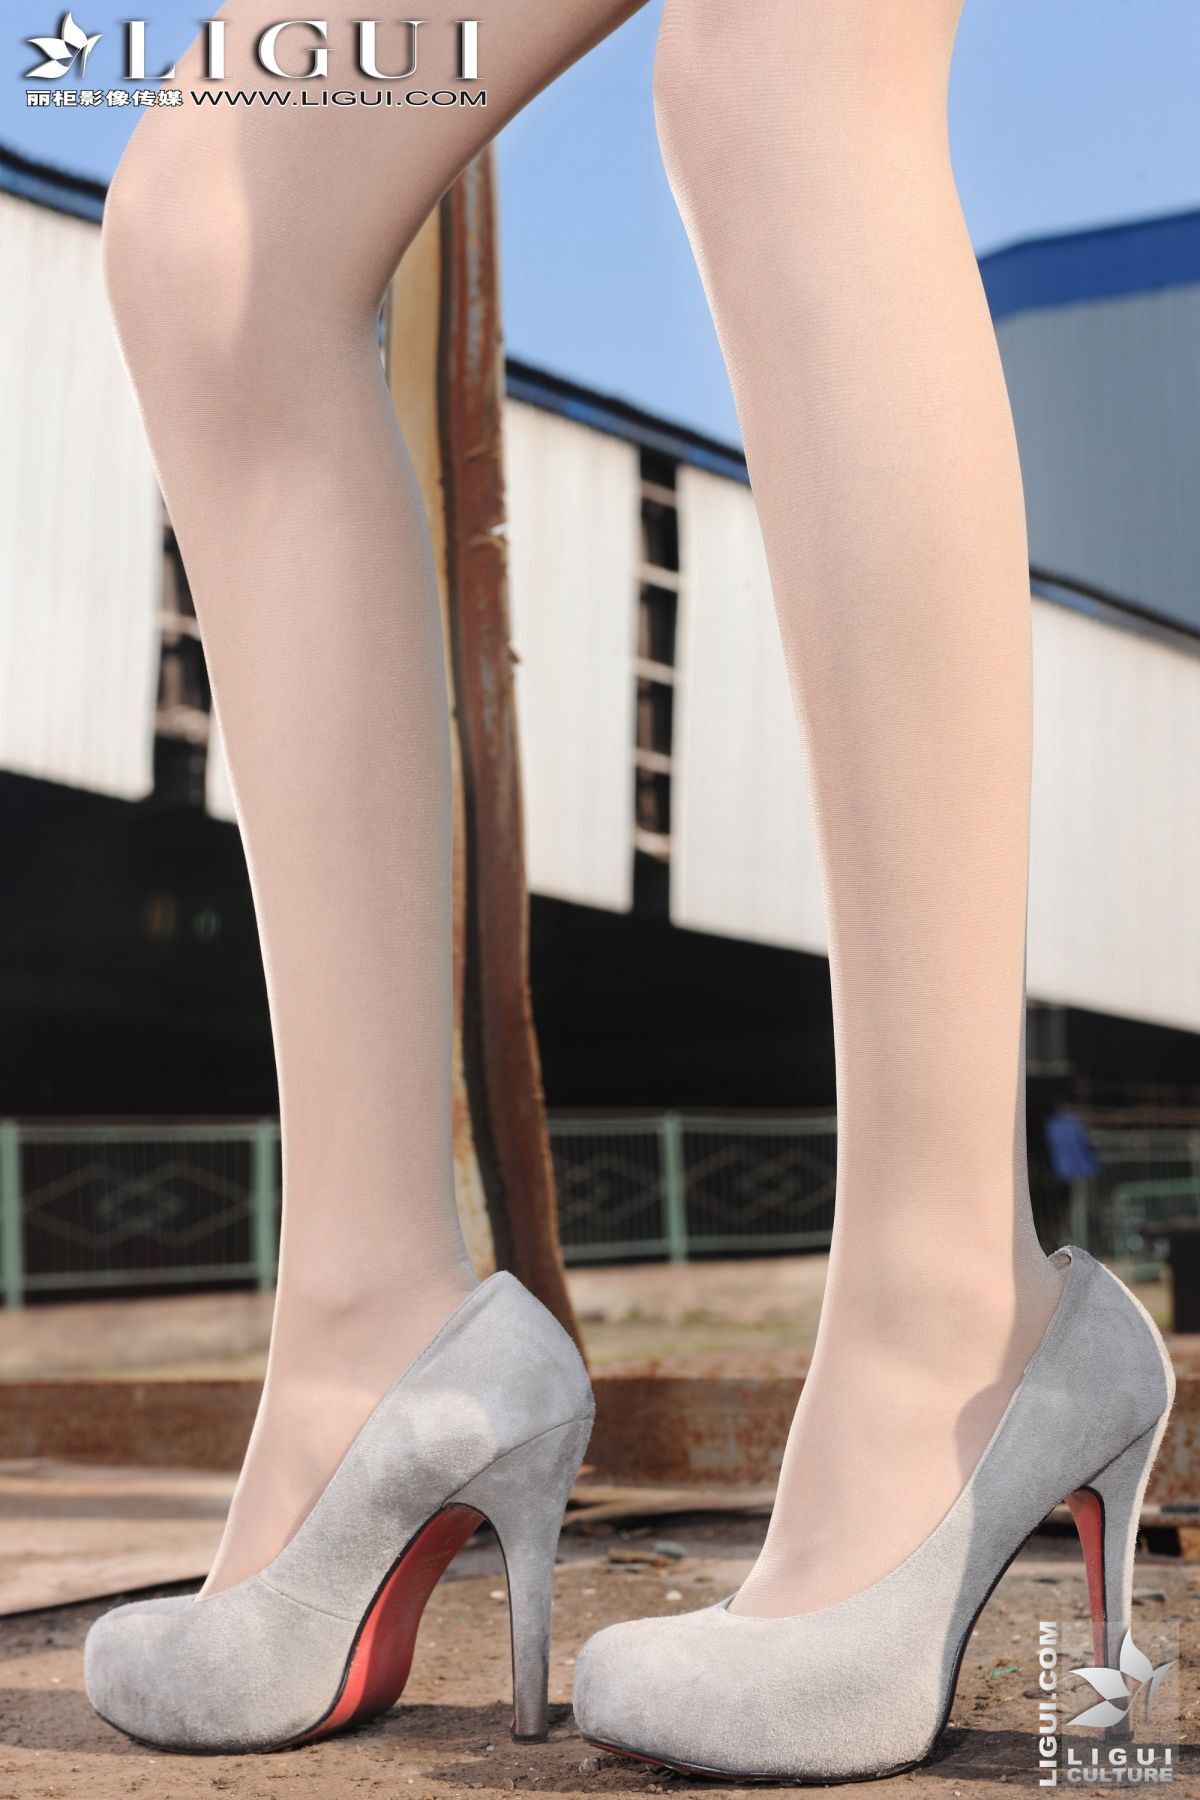 [丽柜] ligui  小镇火车站的美腿诱惑 Model-文欣 下